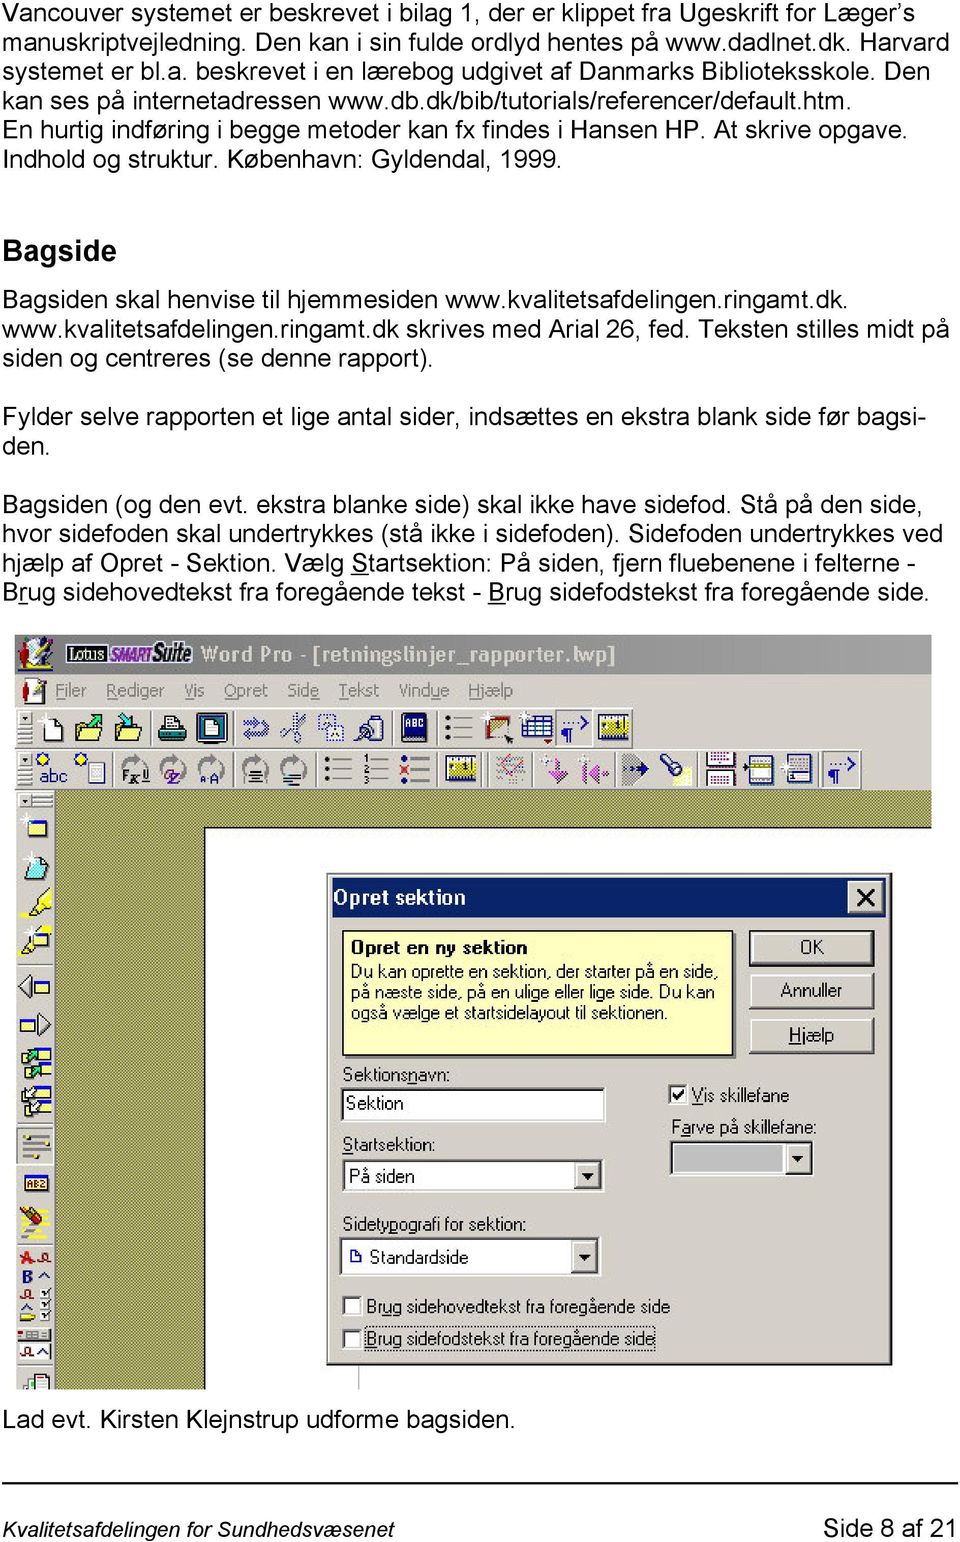 København: Gyldendal, 1999. Bagside Bagsiden skal henvise til hjemmesiden www.kvalitetsafdelingen.ringamt.dk. www.kvalitetsafdelingen.ringamt.dk skrives med Arial 26, fed.